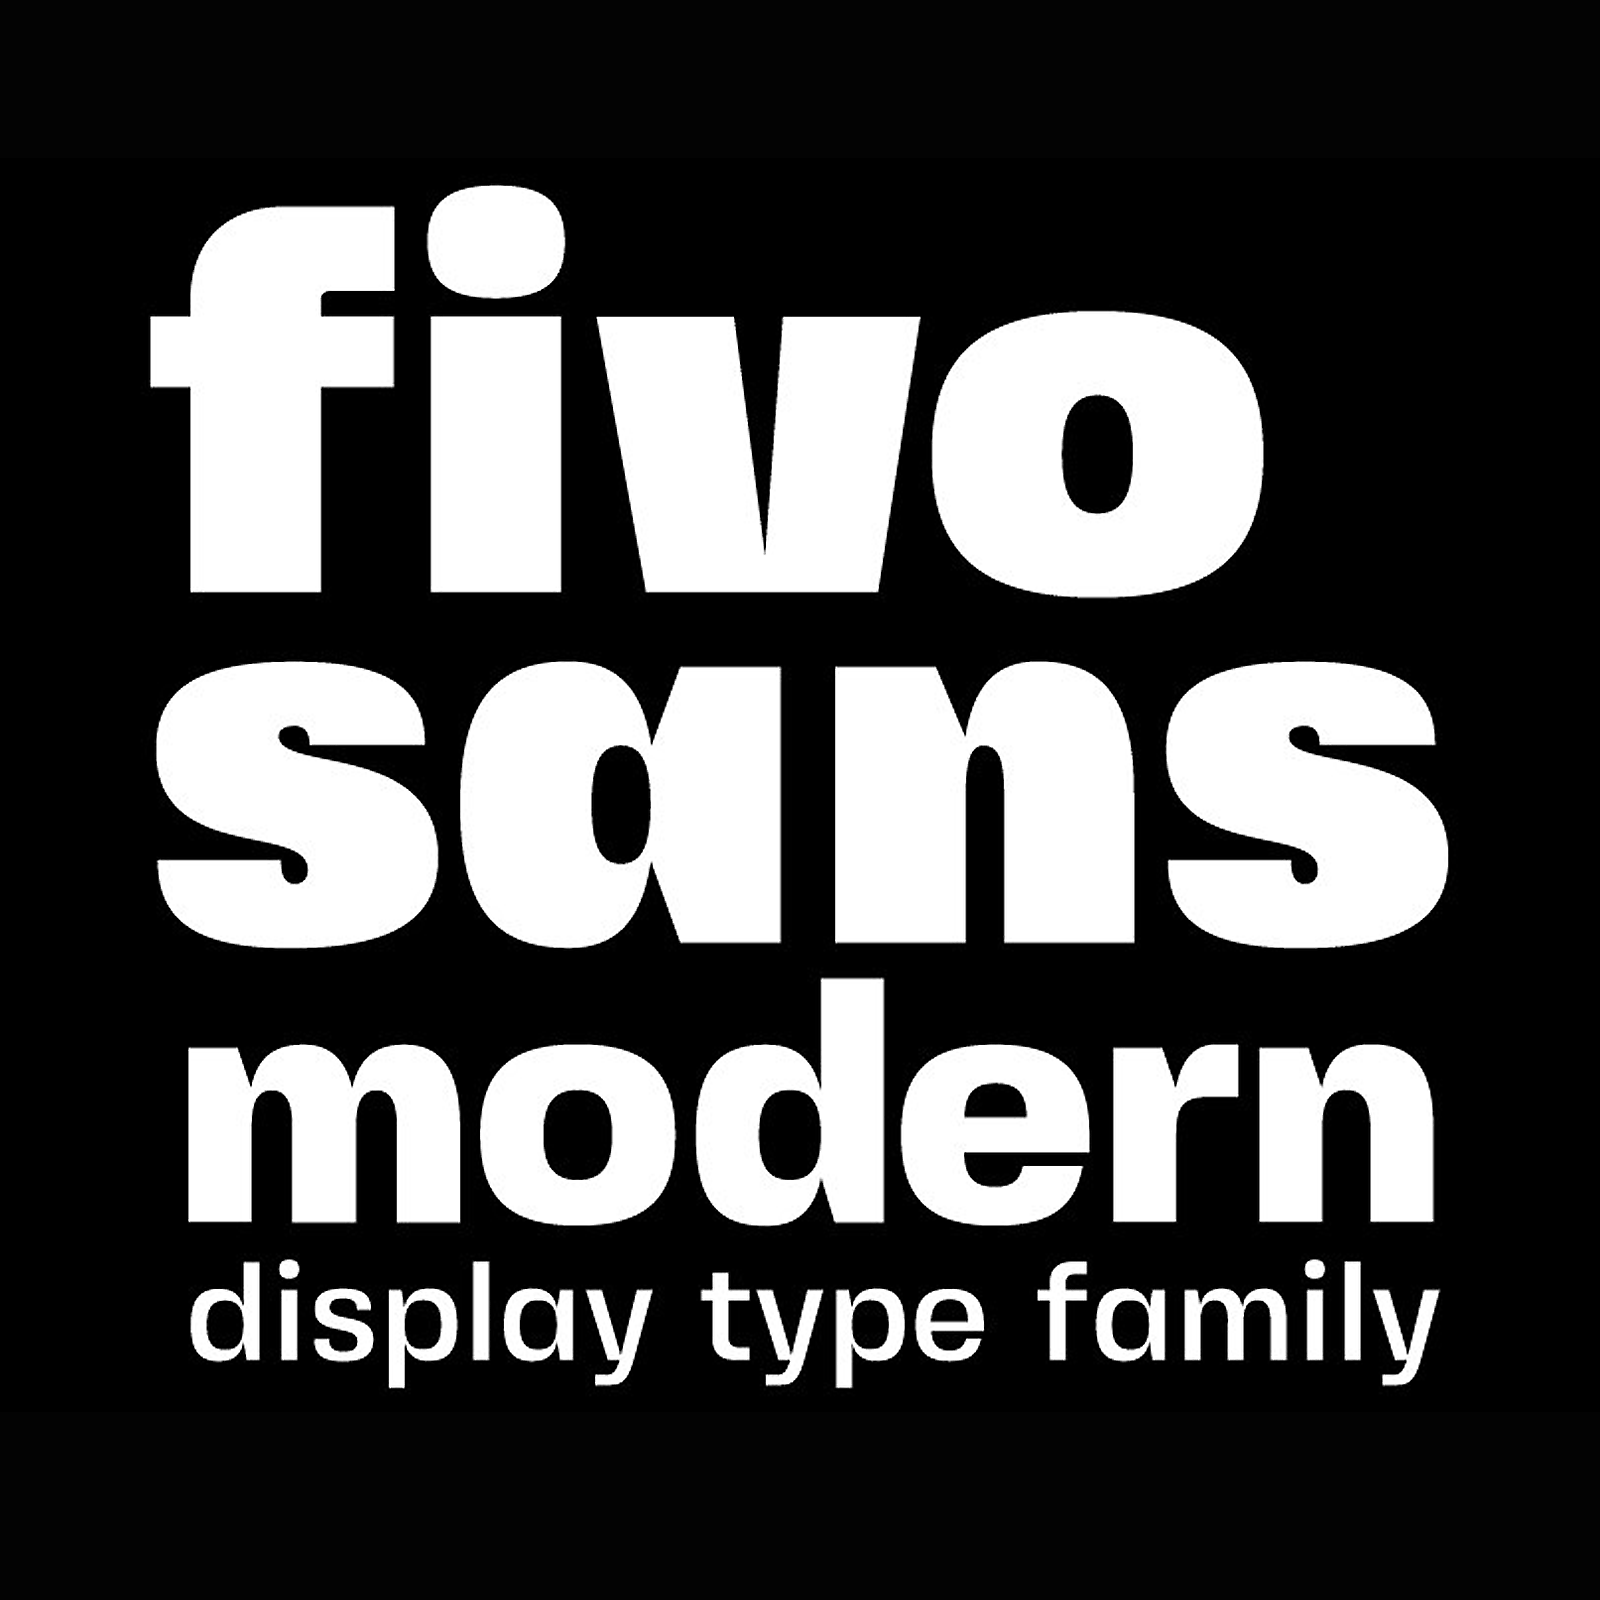 Przykładowa czcionka Fivo Sans Modern #1